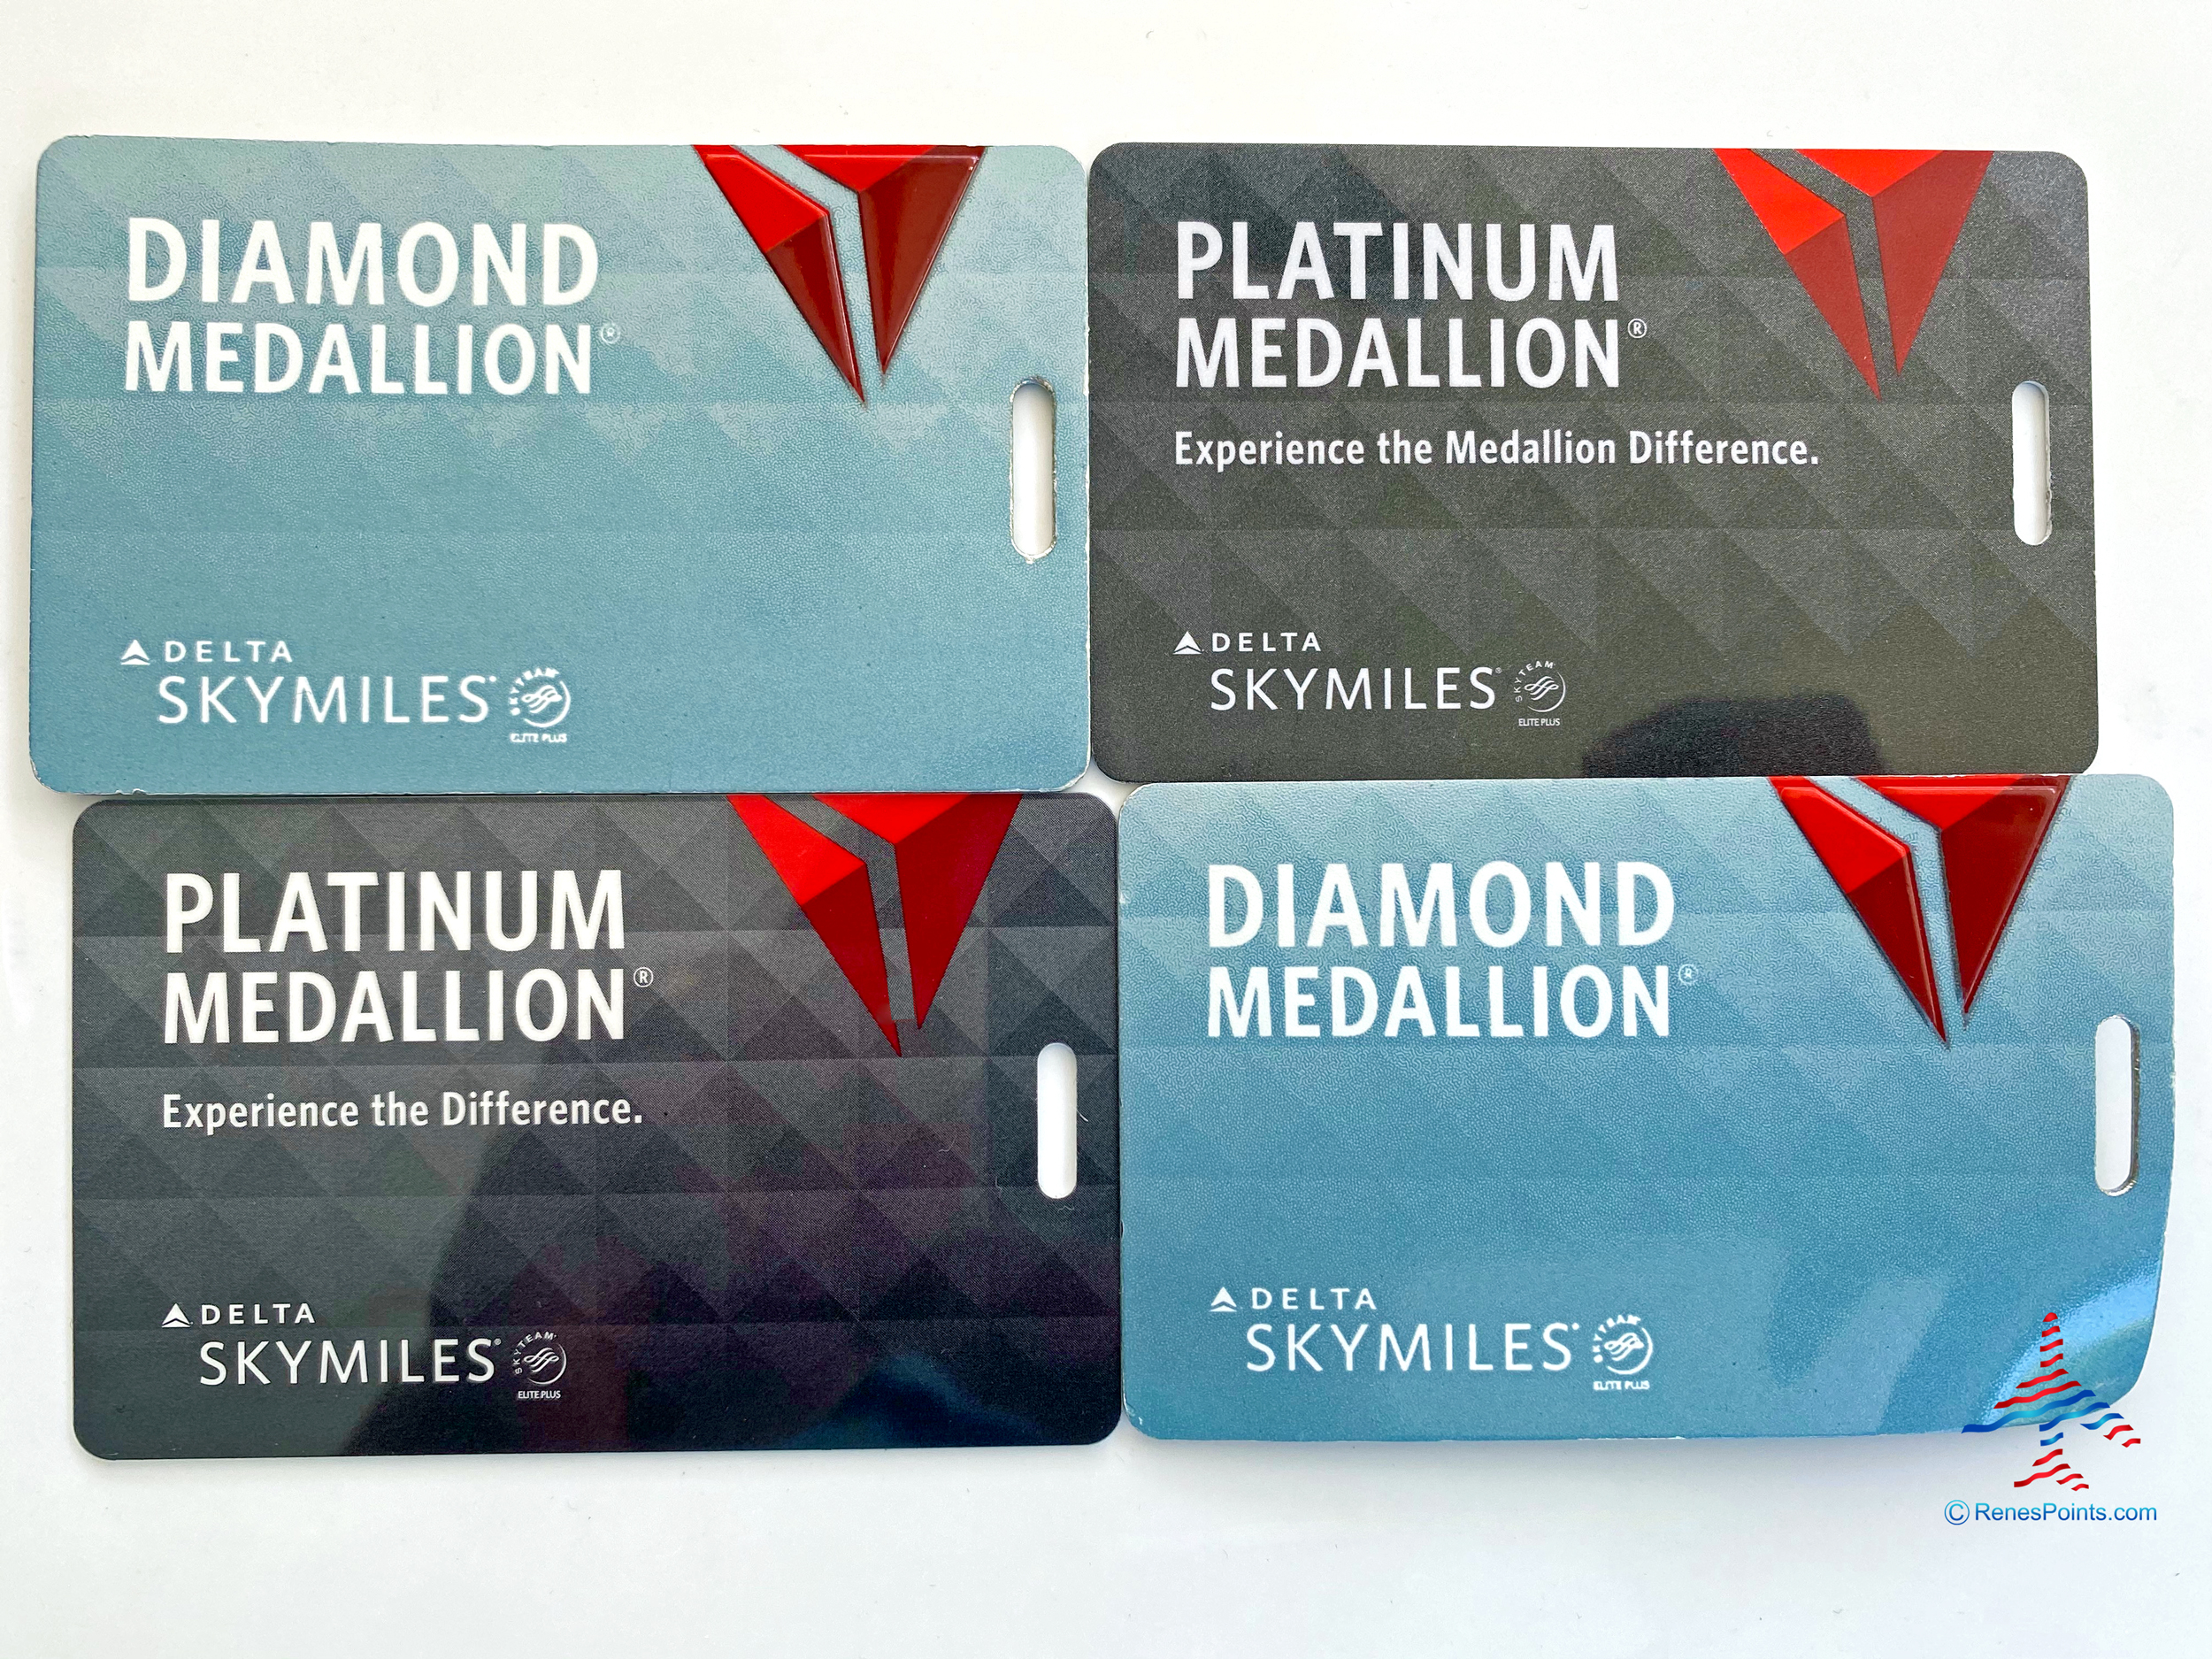 Delta Diamond and Platinum Medallion luggage tags